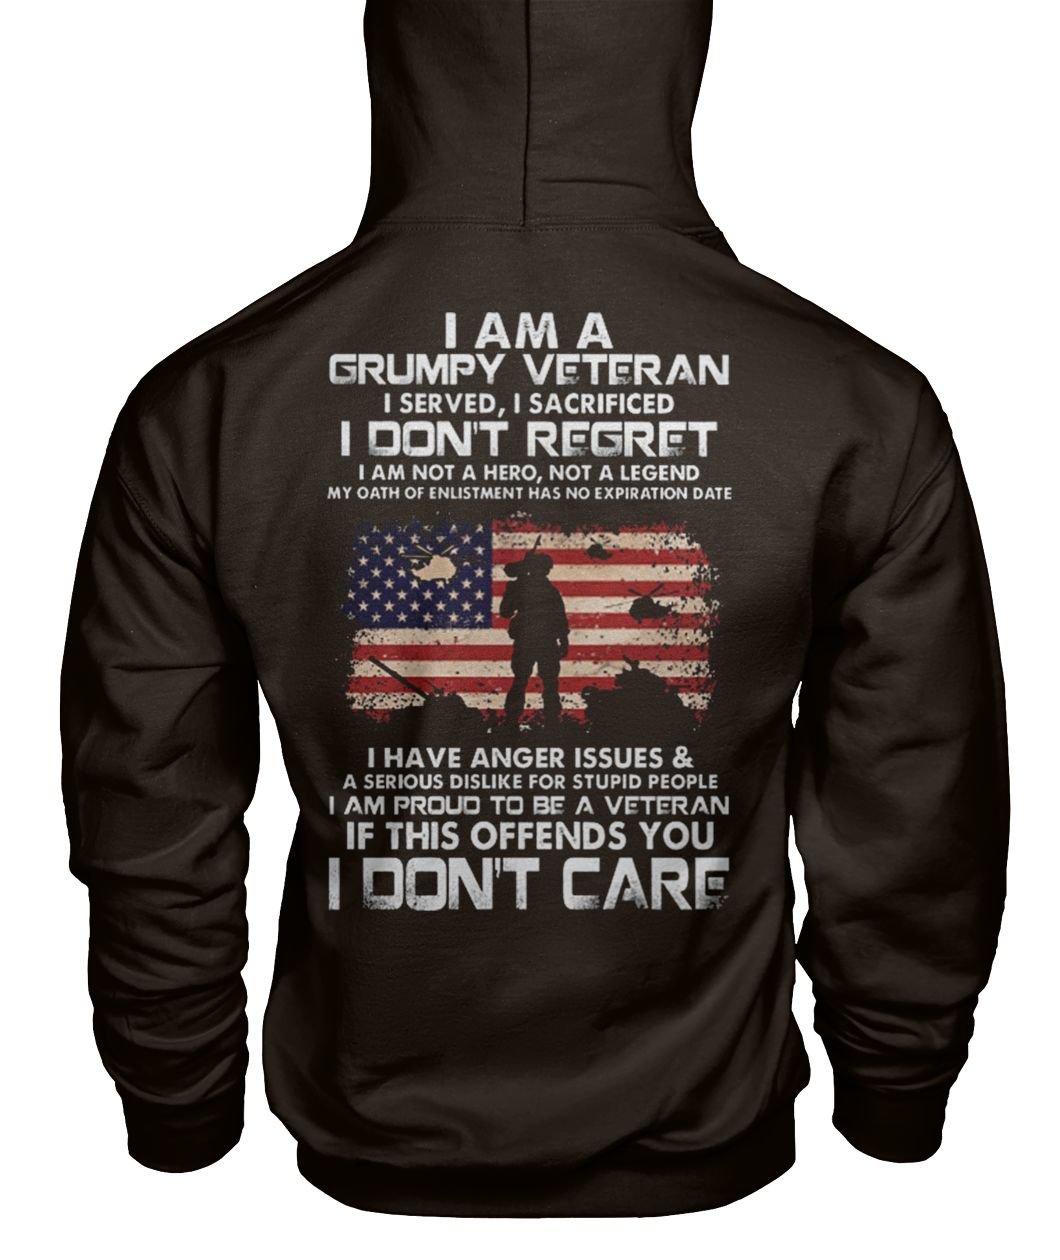 I am a grumpy veteran I served I sacrificed I don't regret gildan hoodie